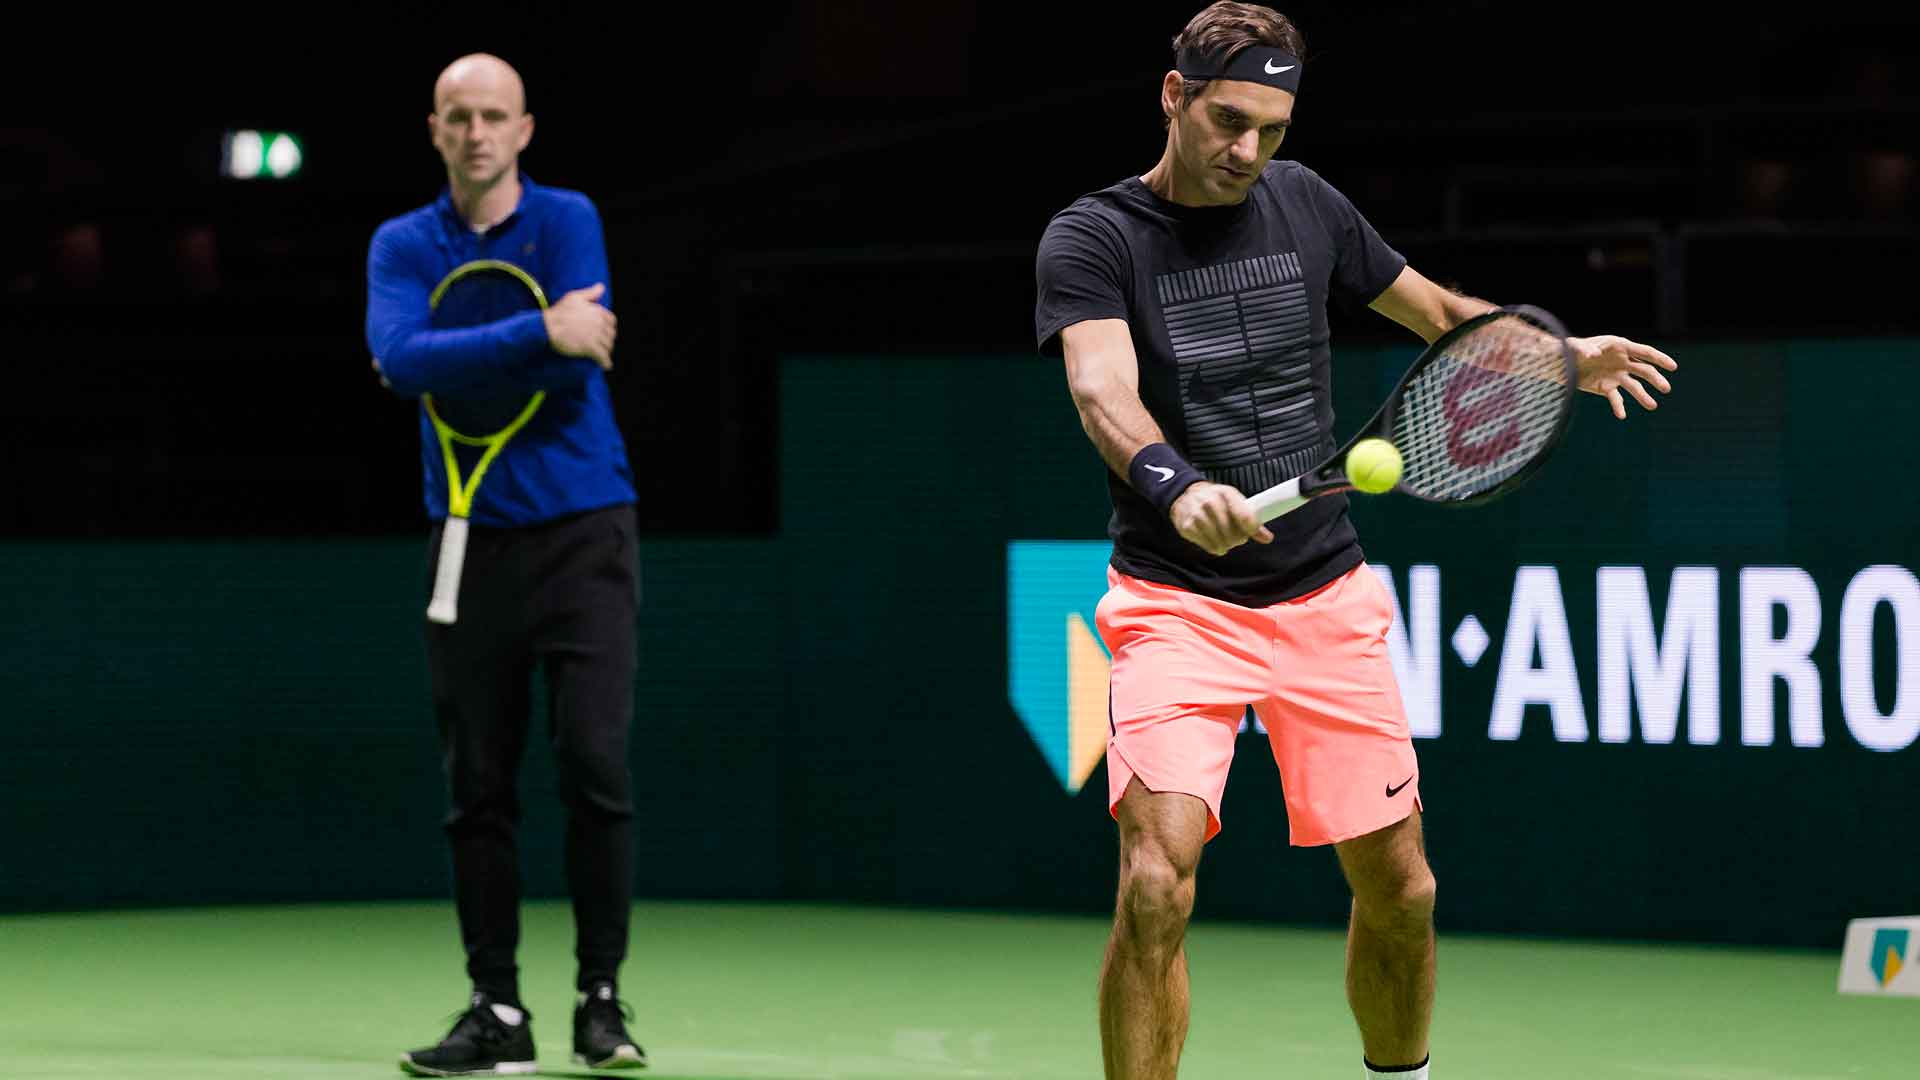 Ljubicic rivela i retroscena della sconfitta di Federer contro Djokovic